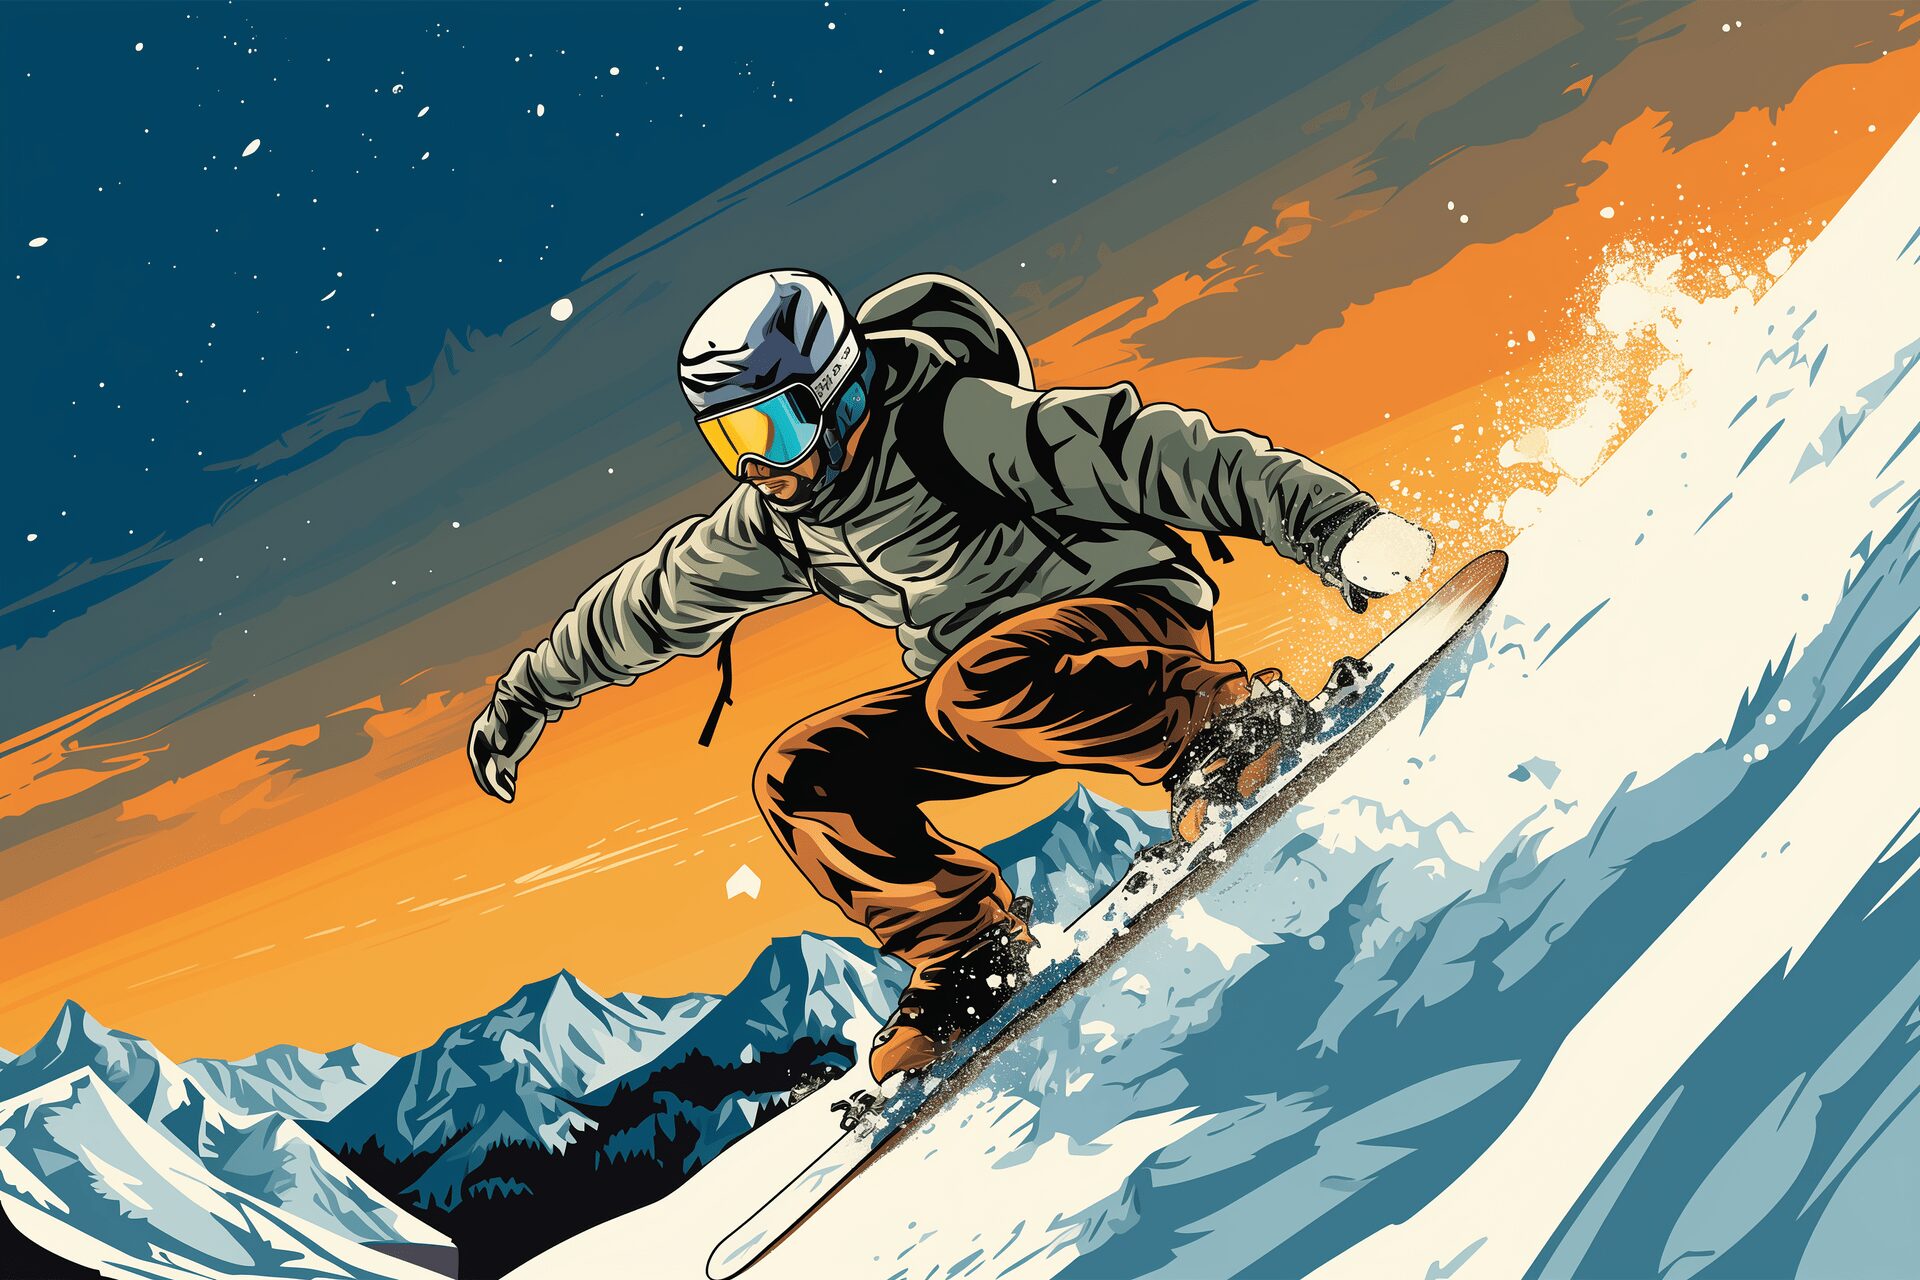 A snowboarder speeding downhill